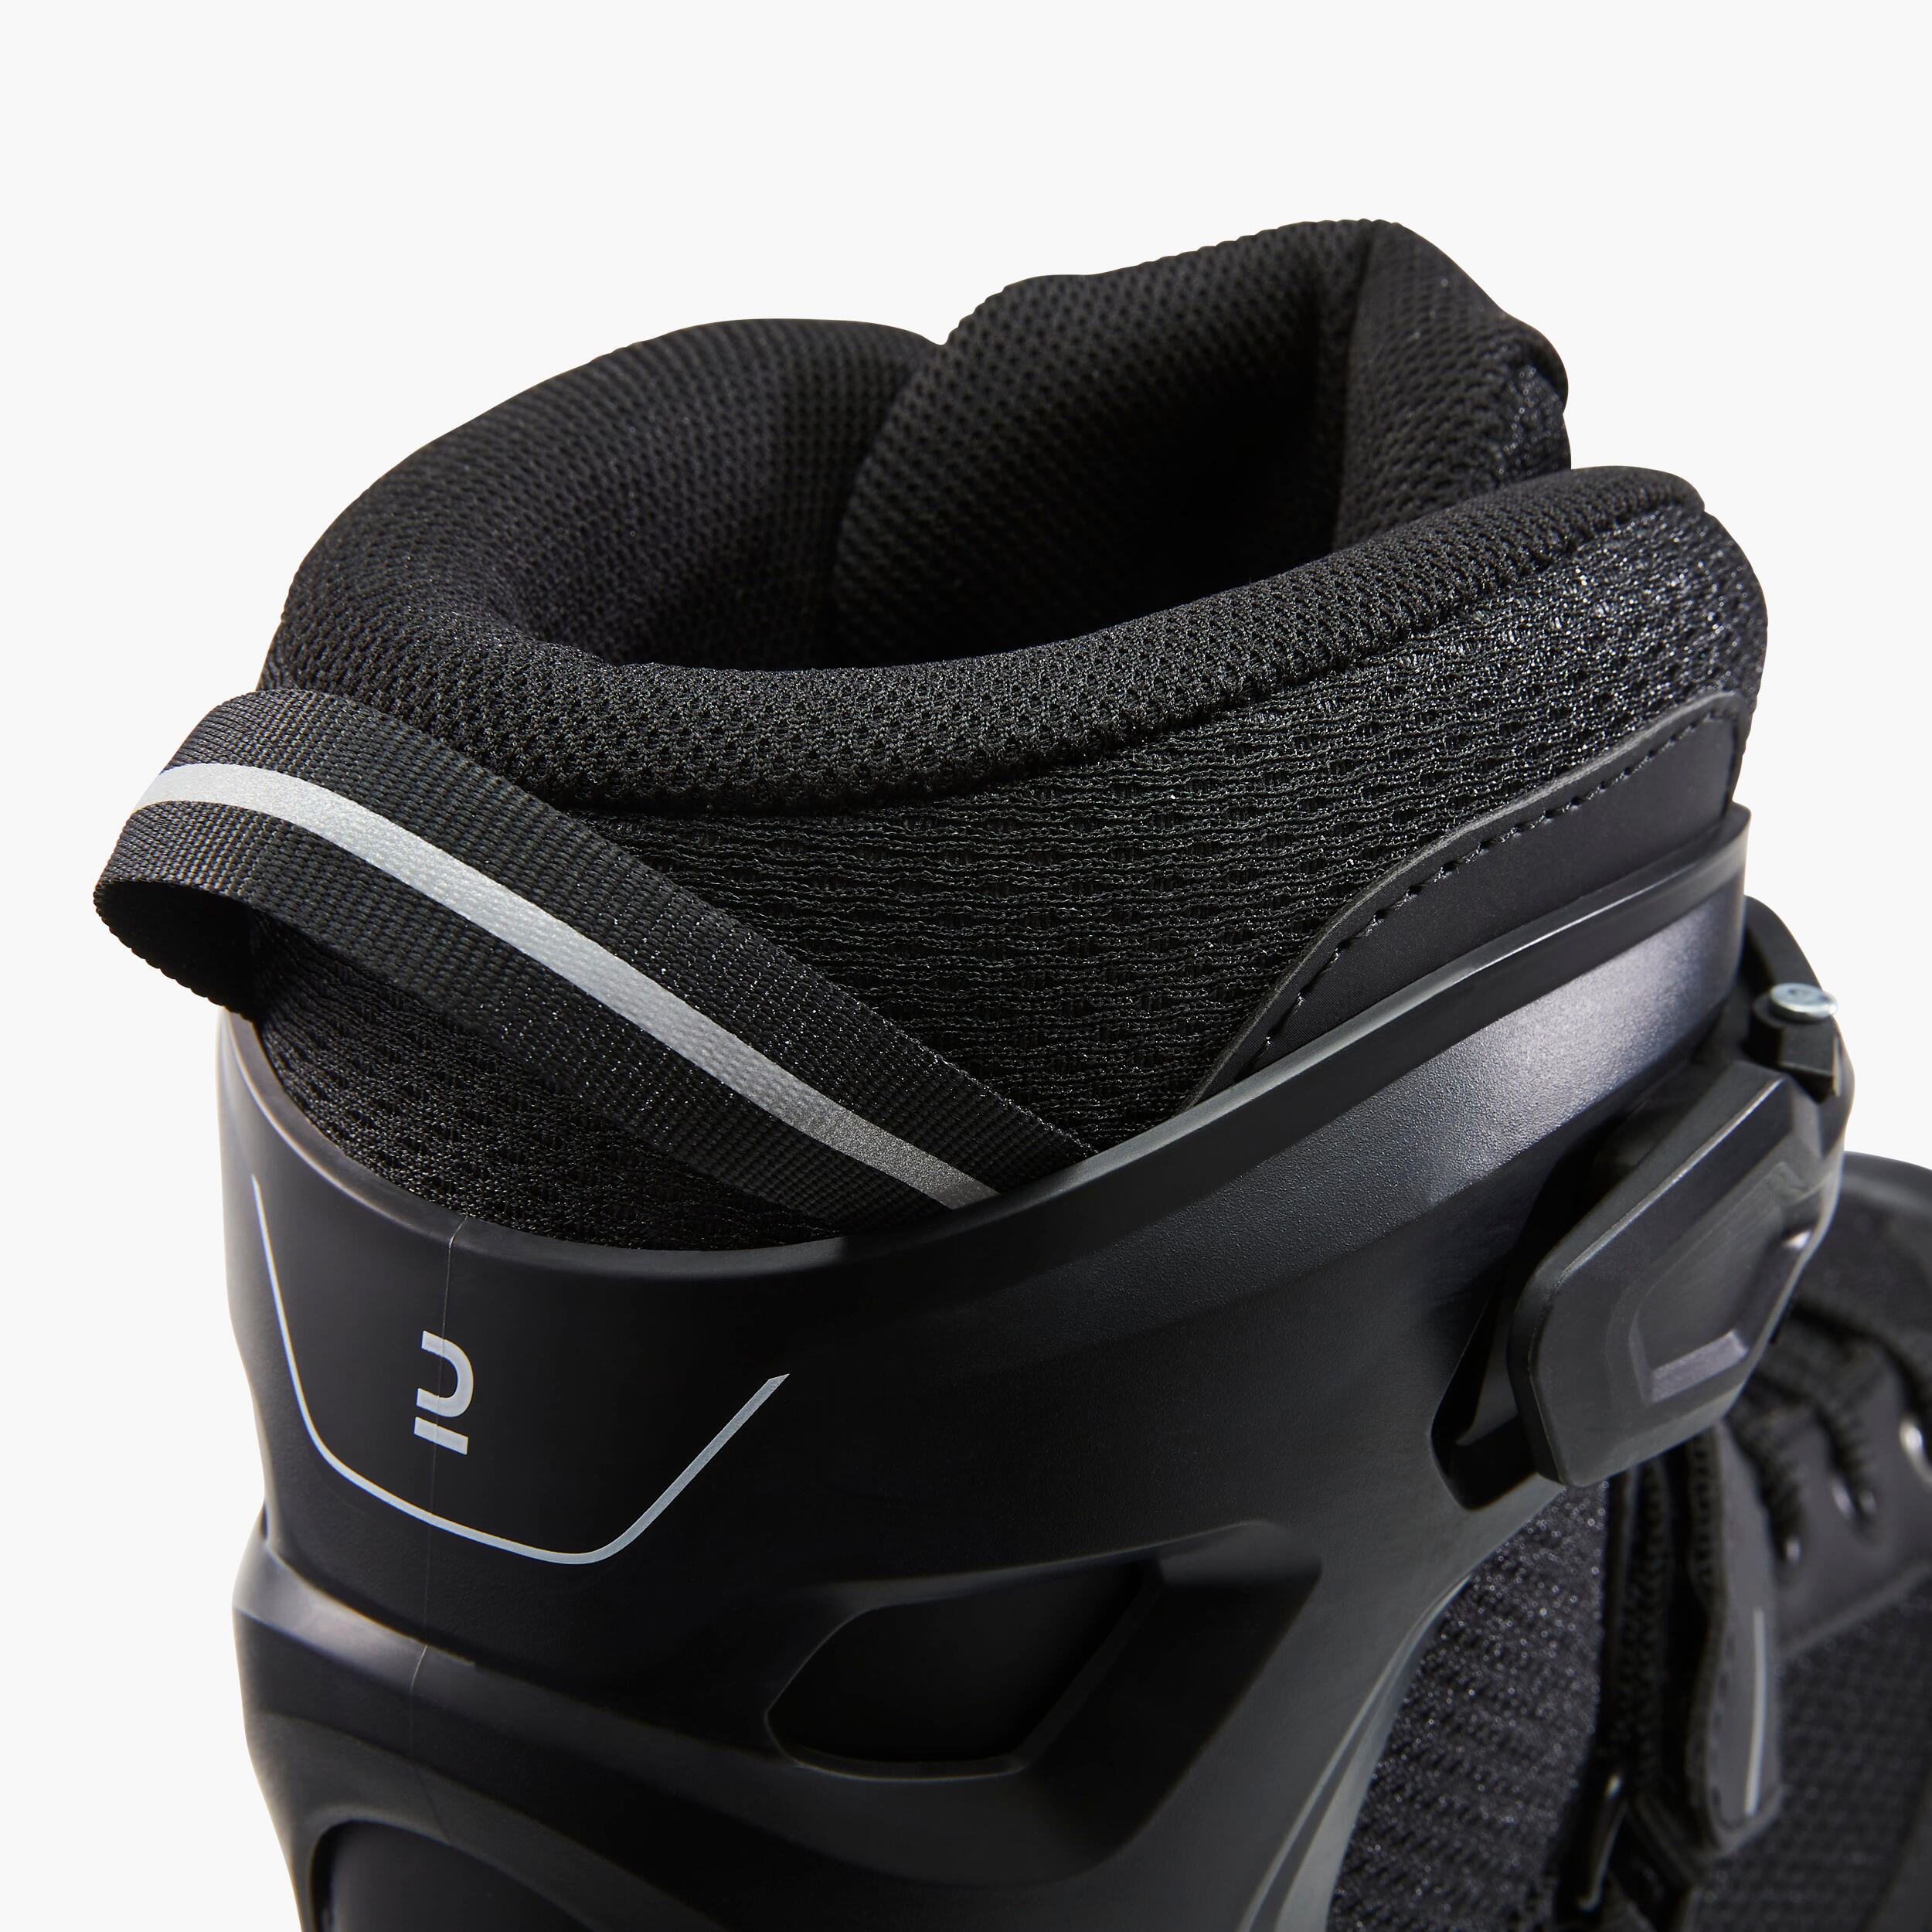 In-line Skates - Fit 100 Black - OXELO